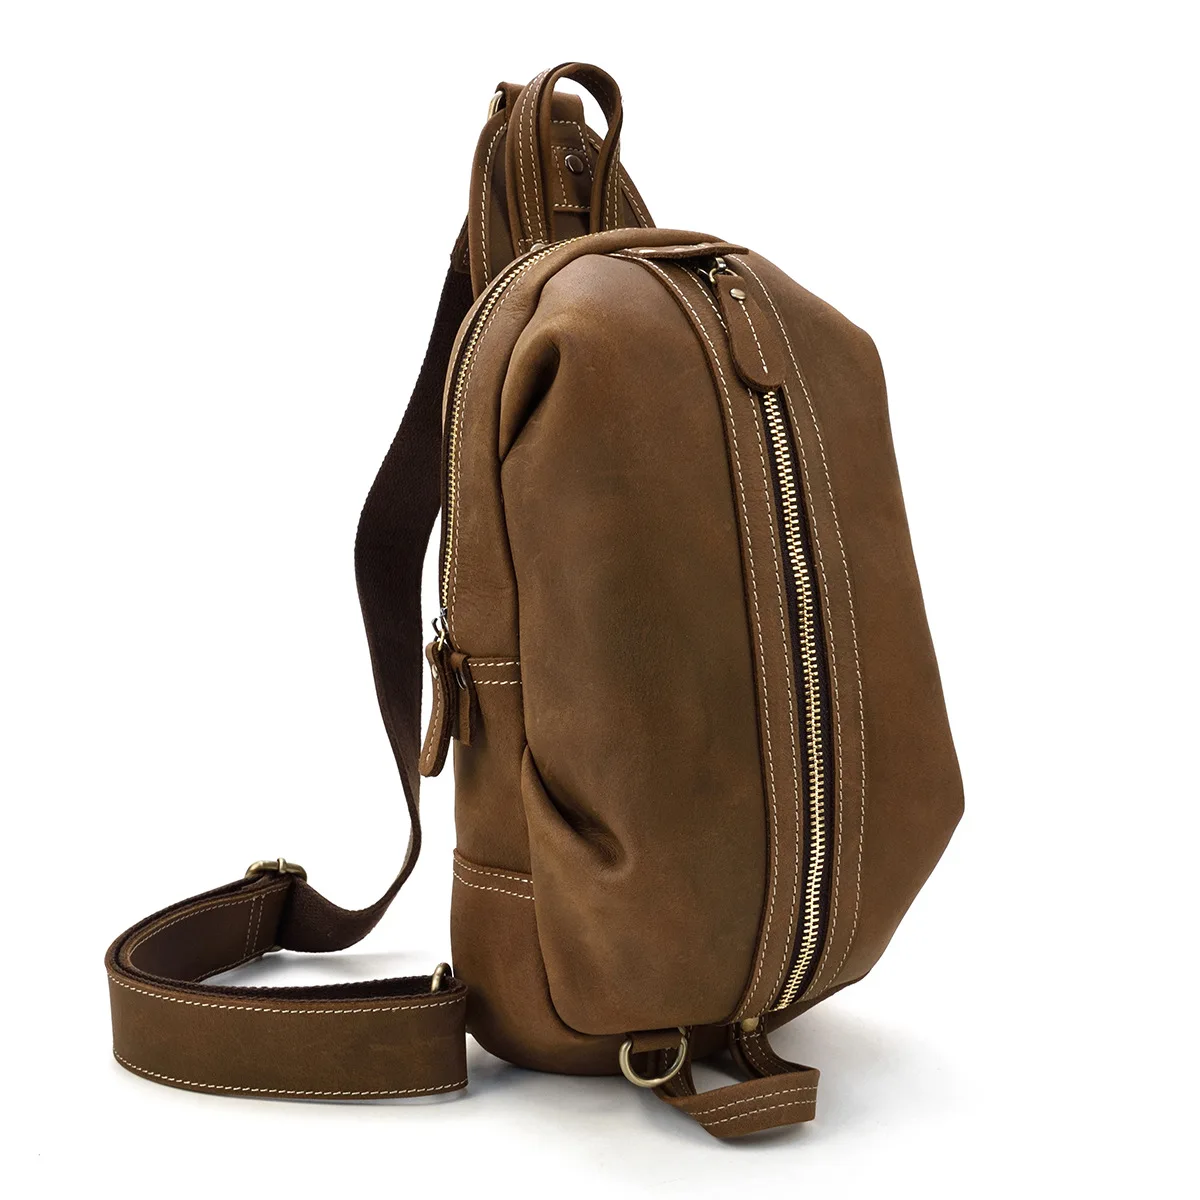 Luufan Дизайн Уникальный дизайнерский кожаный нагрудный мешок слинг груди пакет Crazy Horse кожаные сумки на одно плечо для мини Ipad